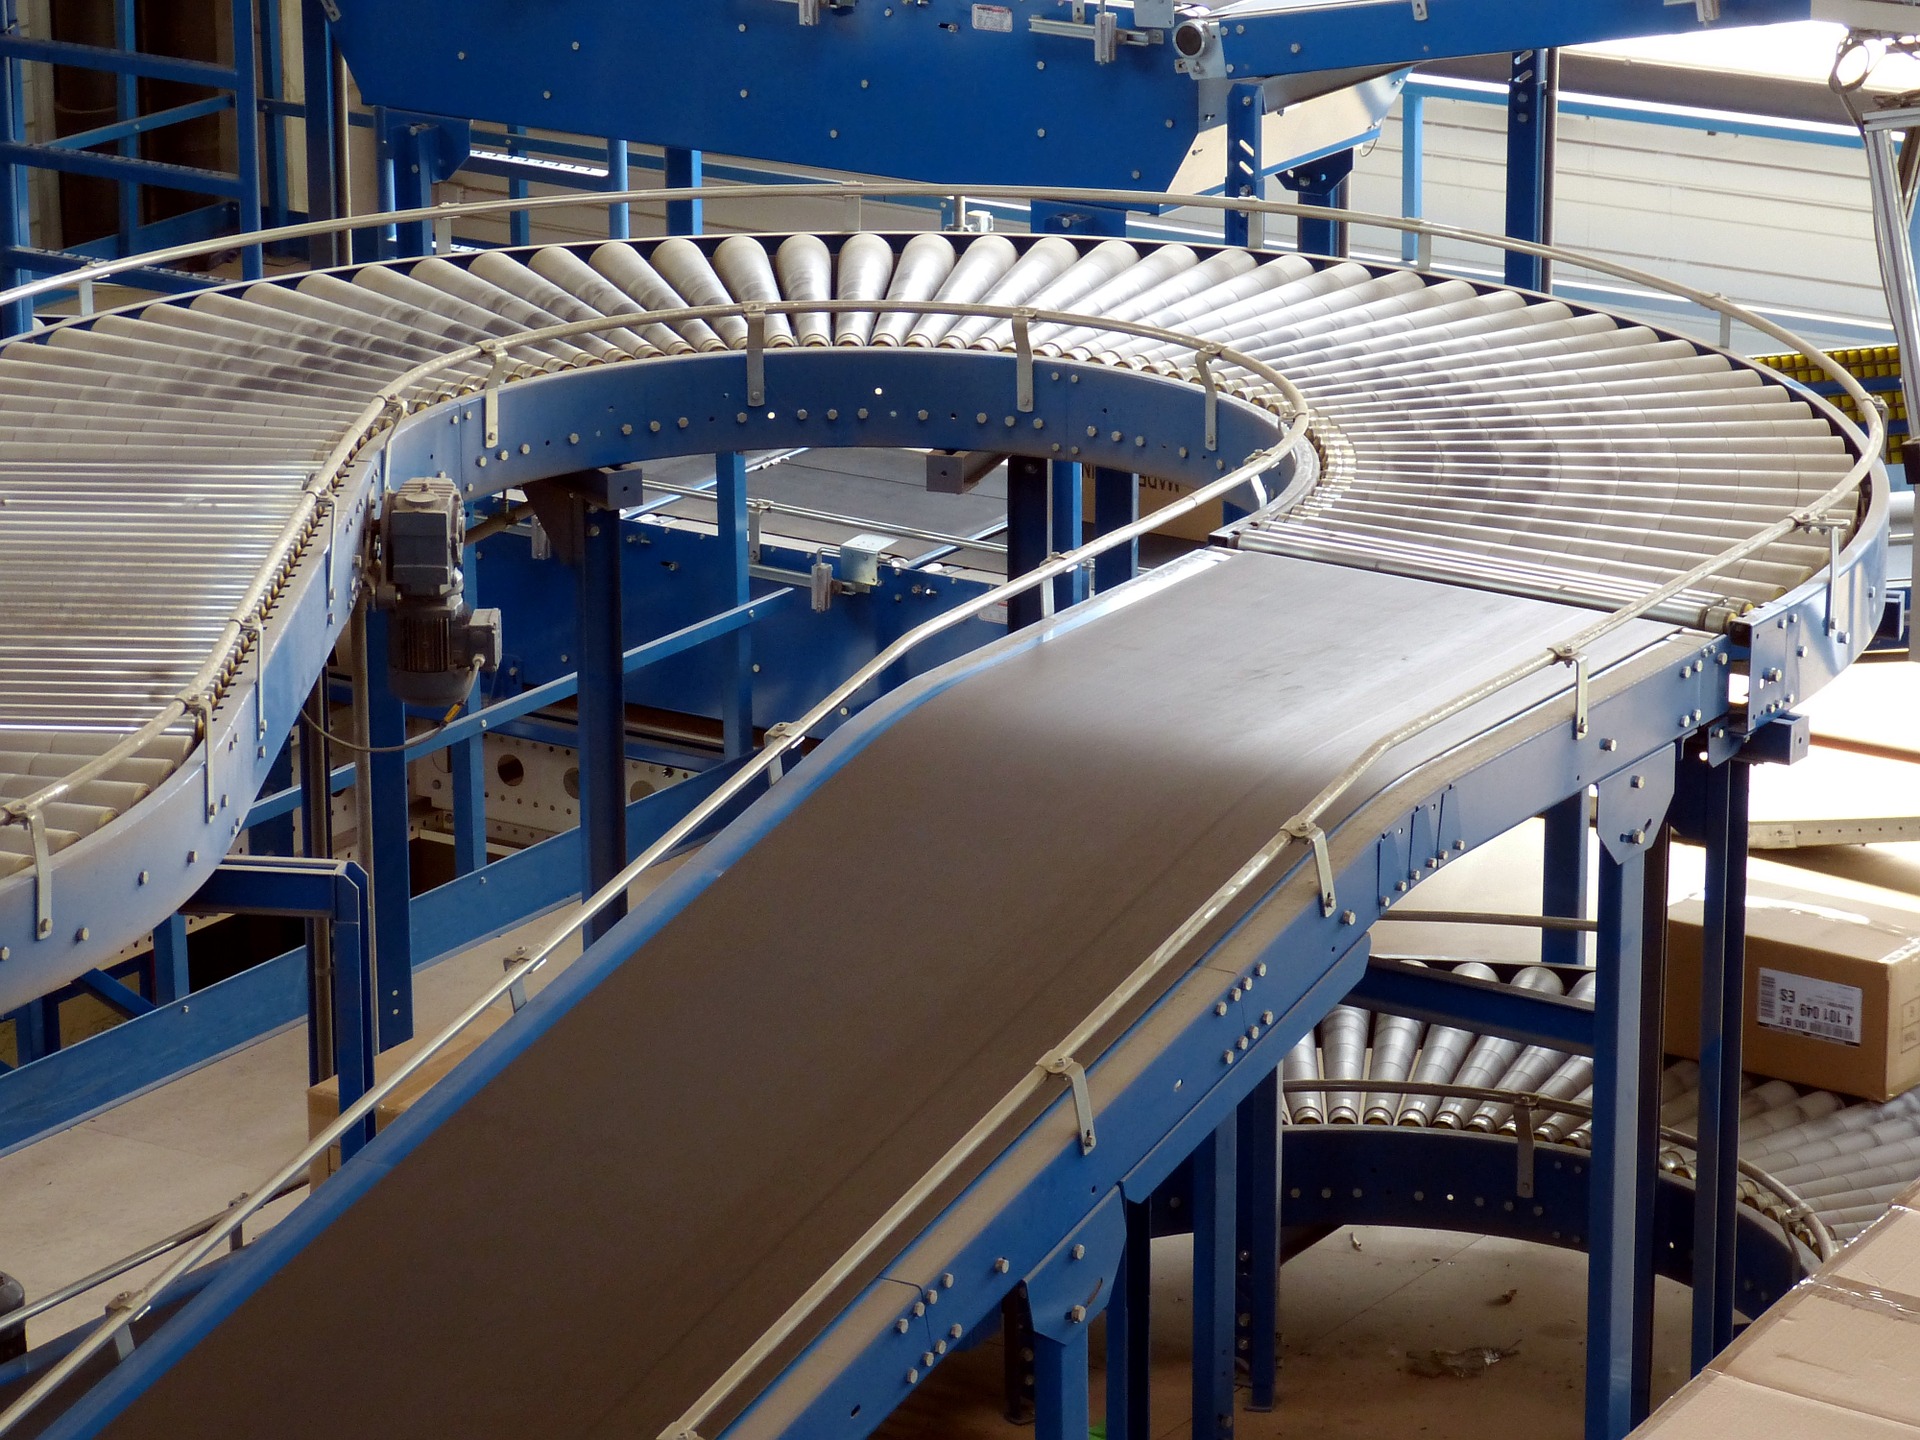 Cov ntsiab lus ntawm Conveyor System Inspection |GCS